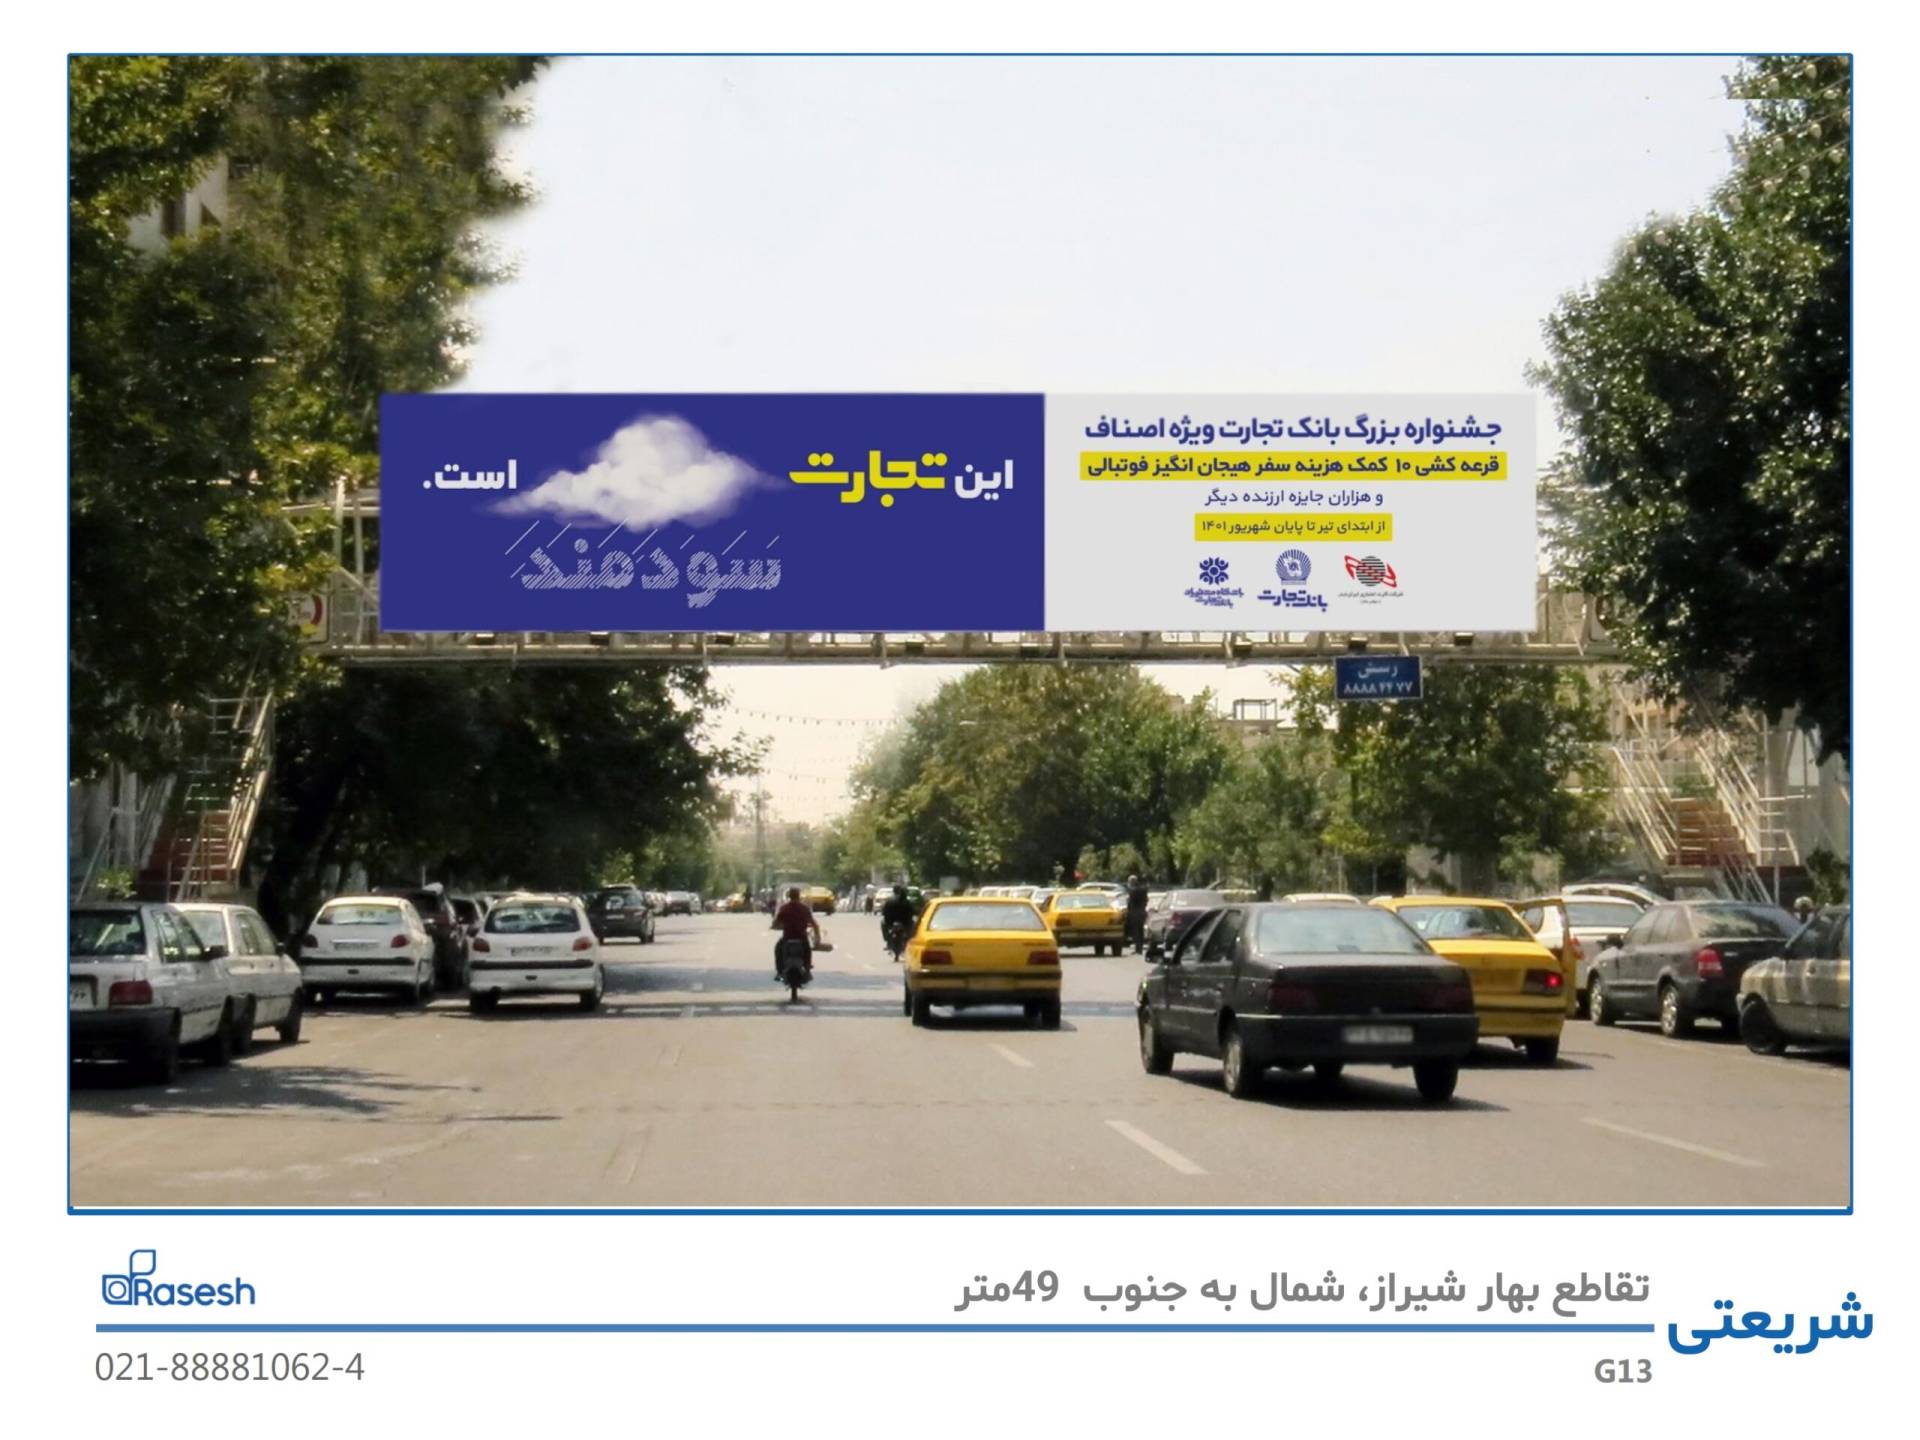 رسش- خیابان شریعتی، تقاطع بهار شیراز، شمال به جنوب